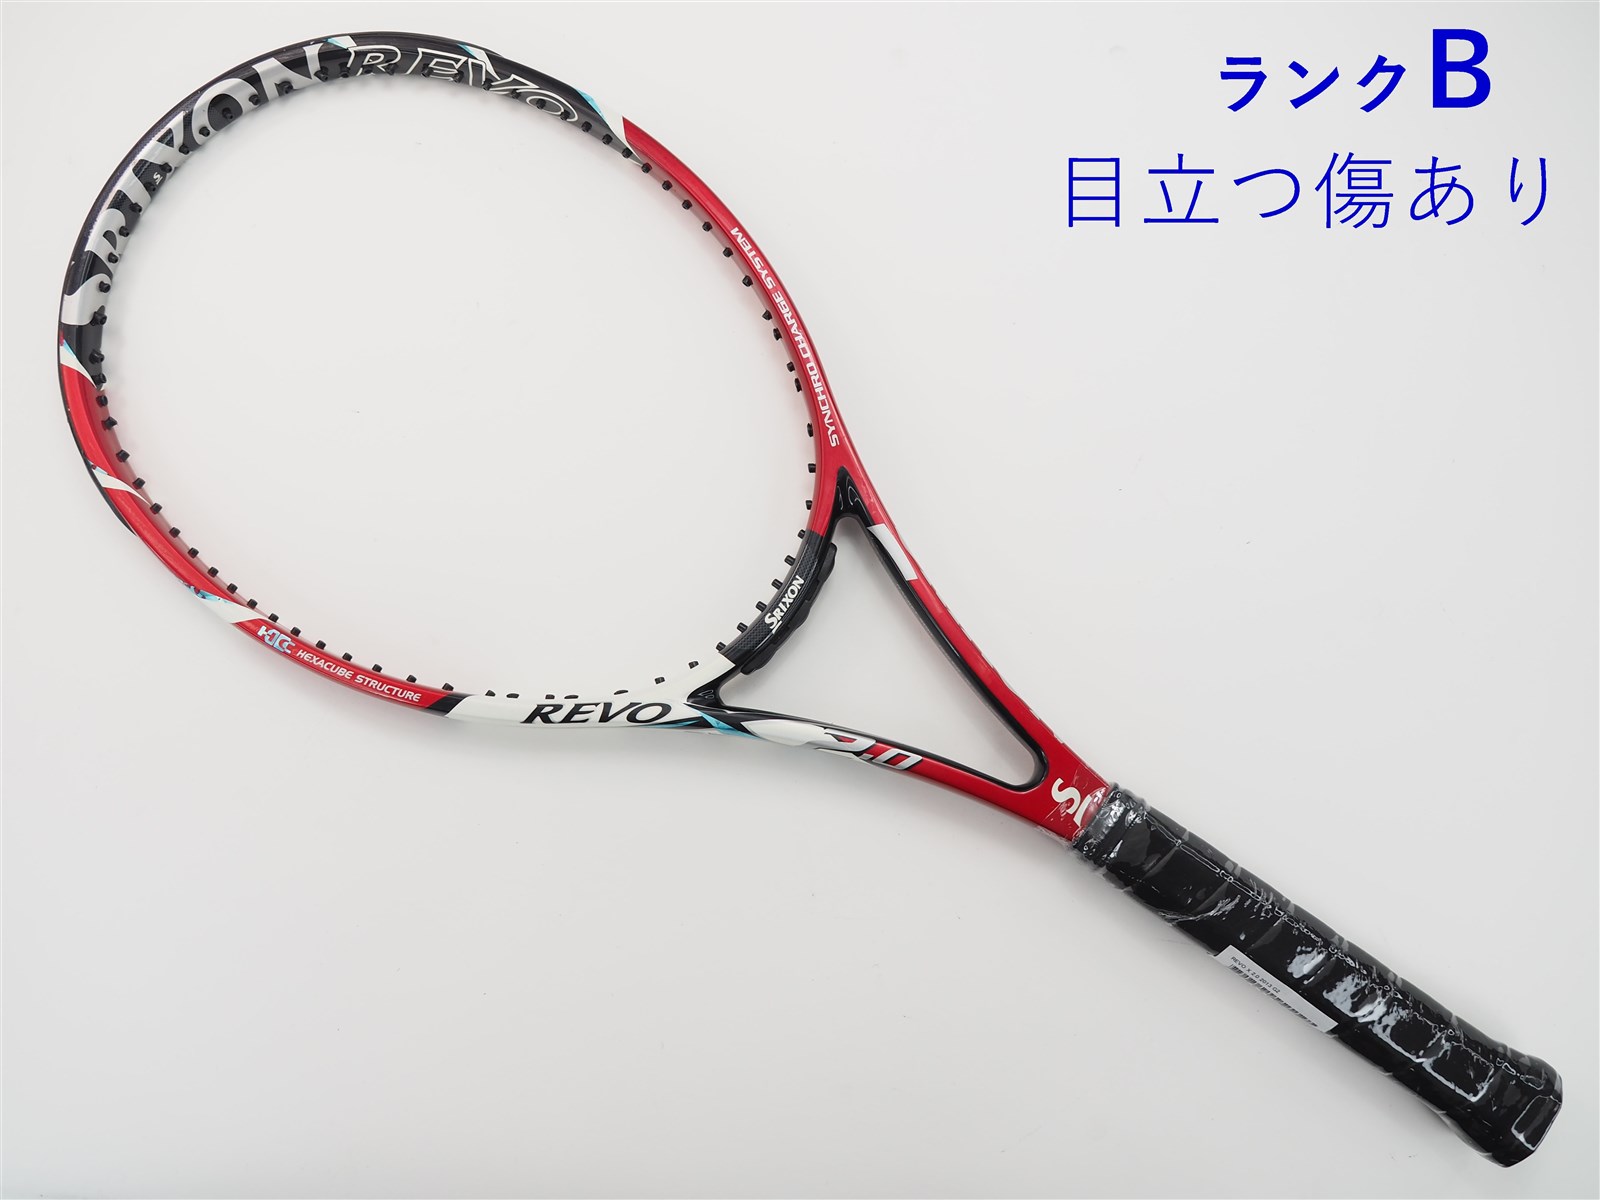 テニスラケット スリクソン レヴォ エックス 4.0 2013年モデル (G2)SRIXON REVO X 4.0 2013100平方インチ長さ